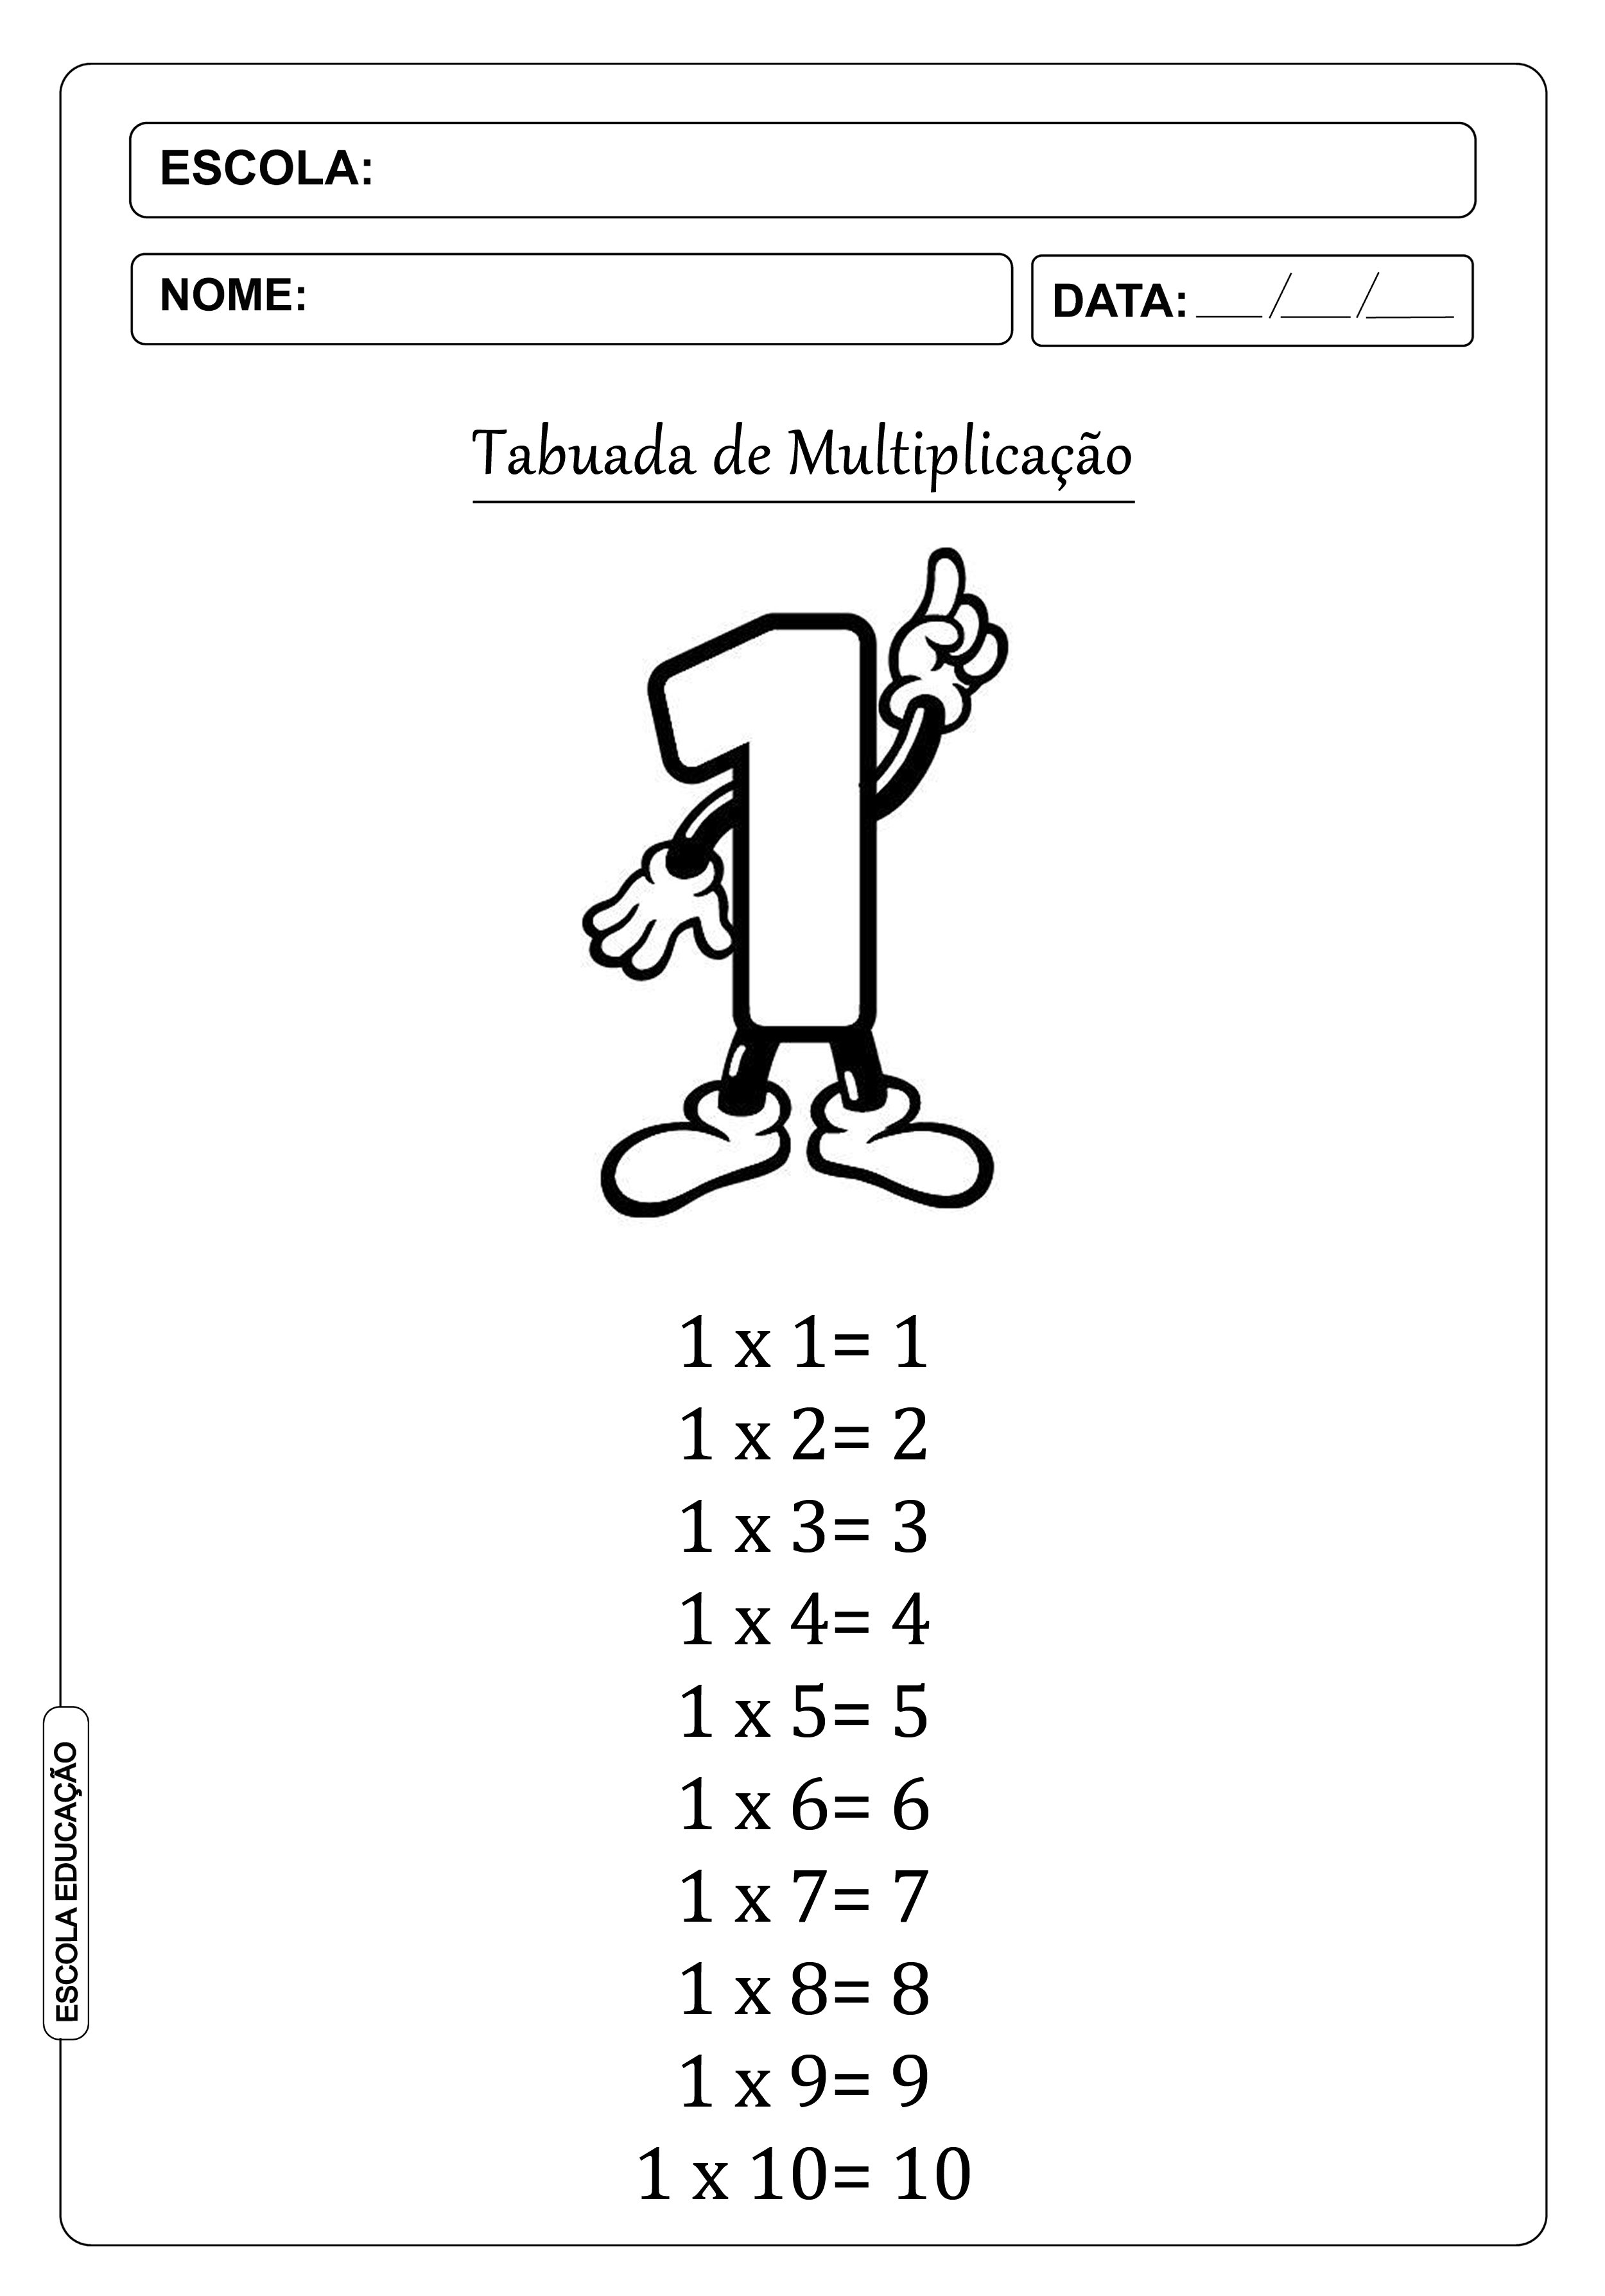 Tabuada Para Imprimir: Com Resultados. Contas de Multiplicação do 1 ao 9.  Material Didatico Para Professores, Pais e Alunos.